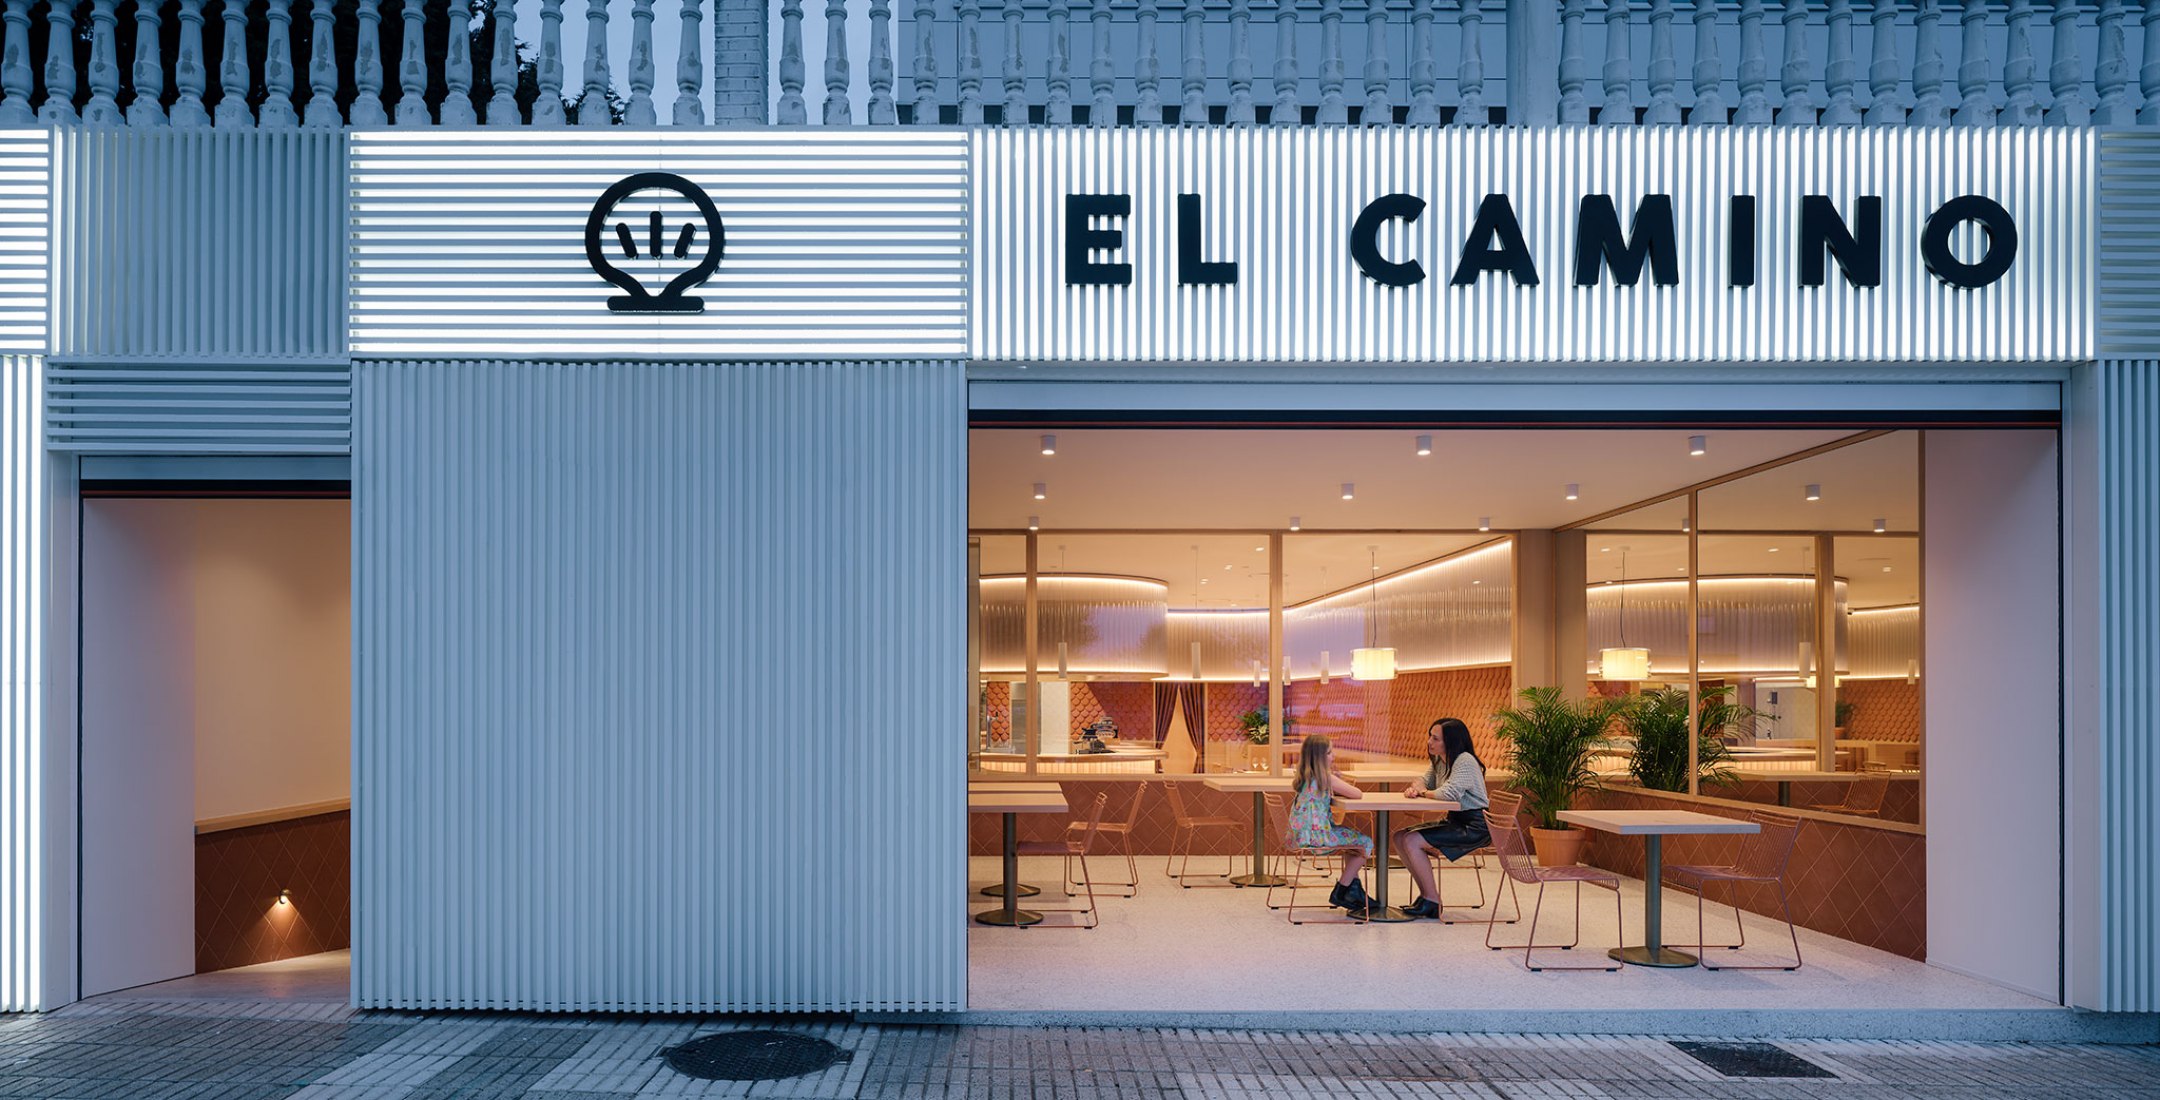 Restaurante «El Camino» por Zooco estudio. Fotografía por Imagen Subliminal.